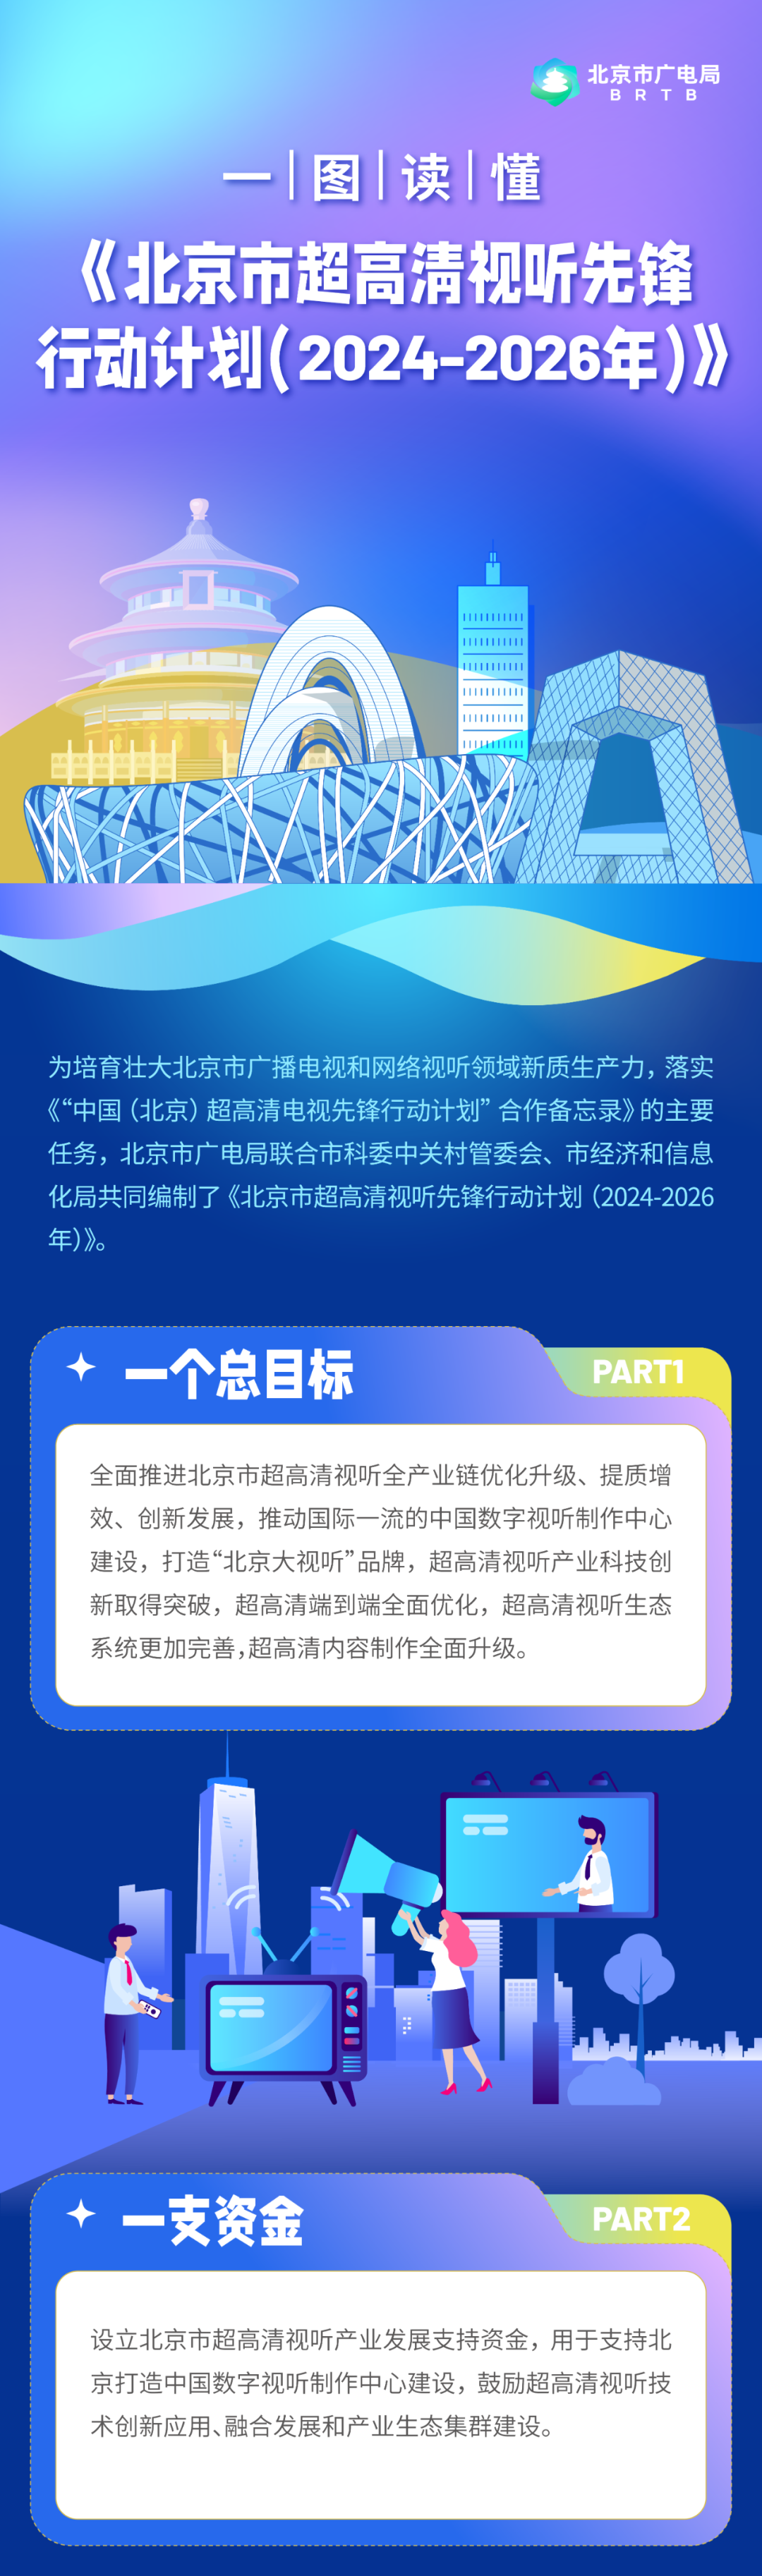 支持超高清入户行动，打造“北京大视听”品牌